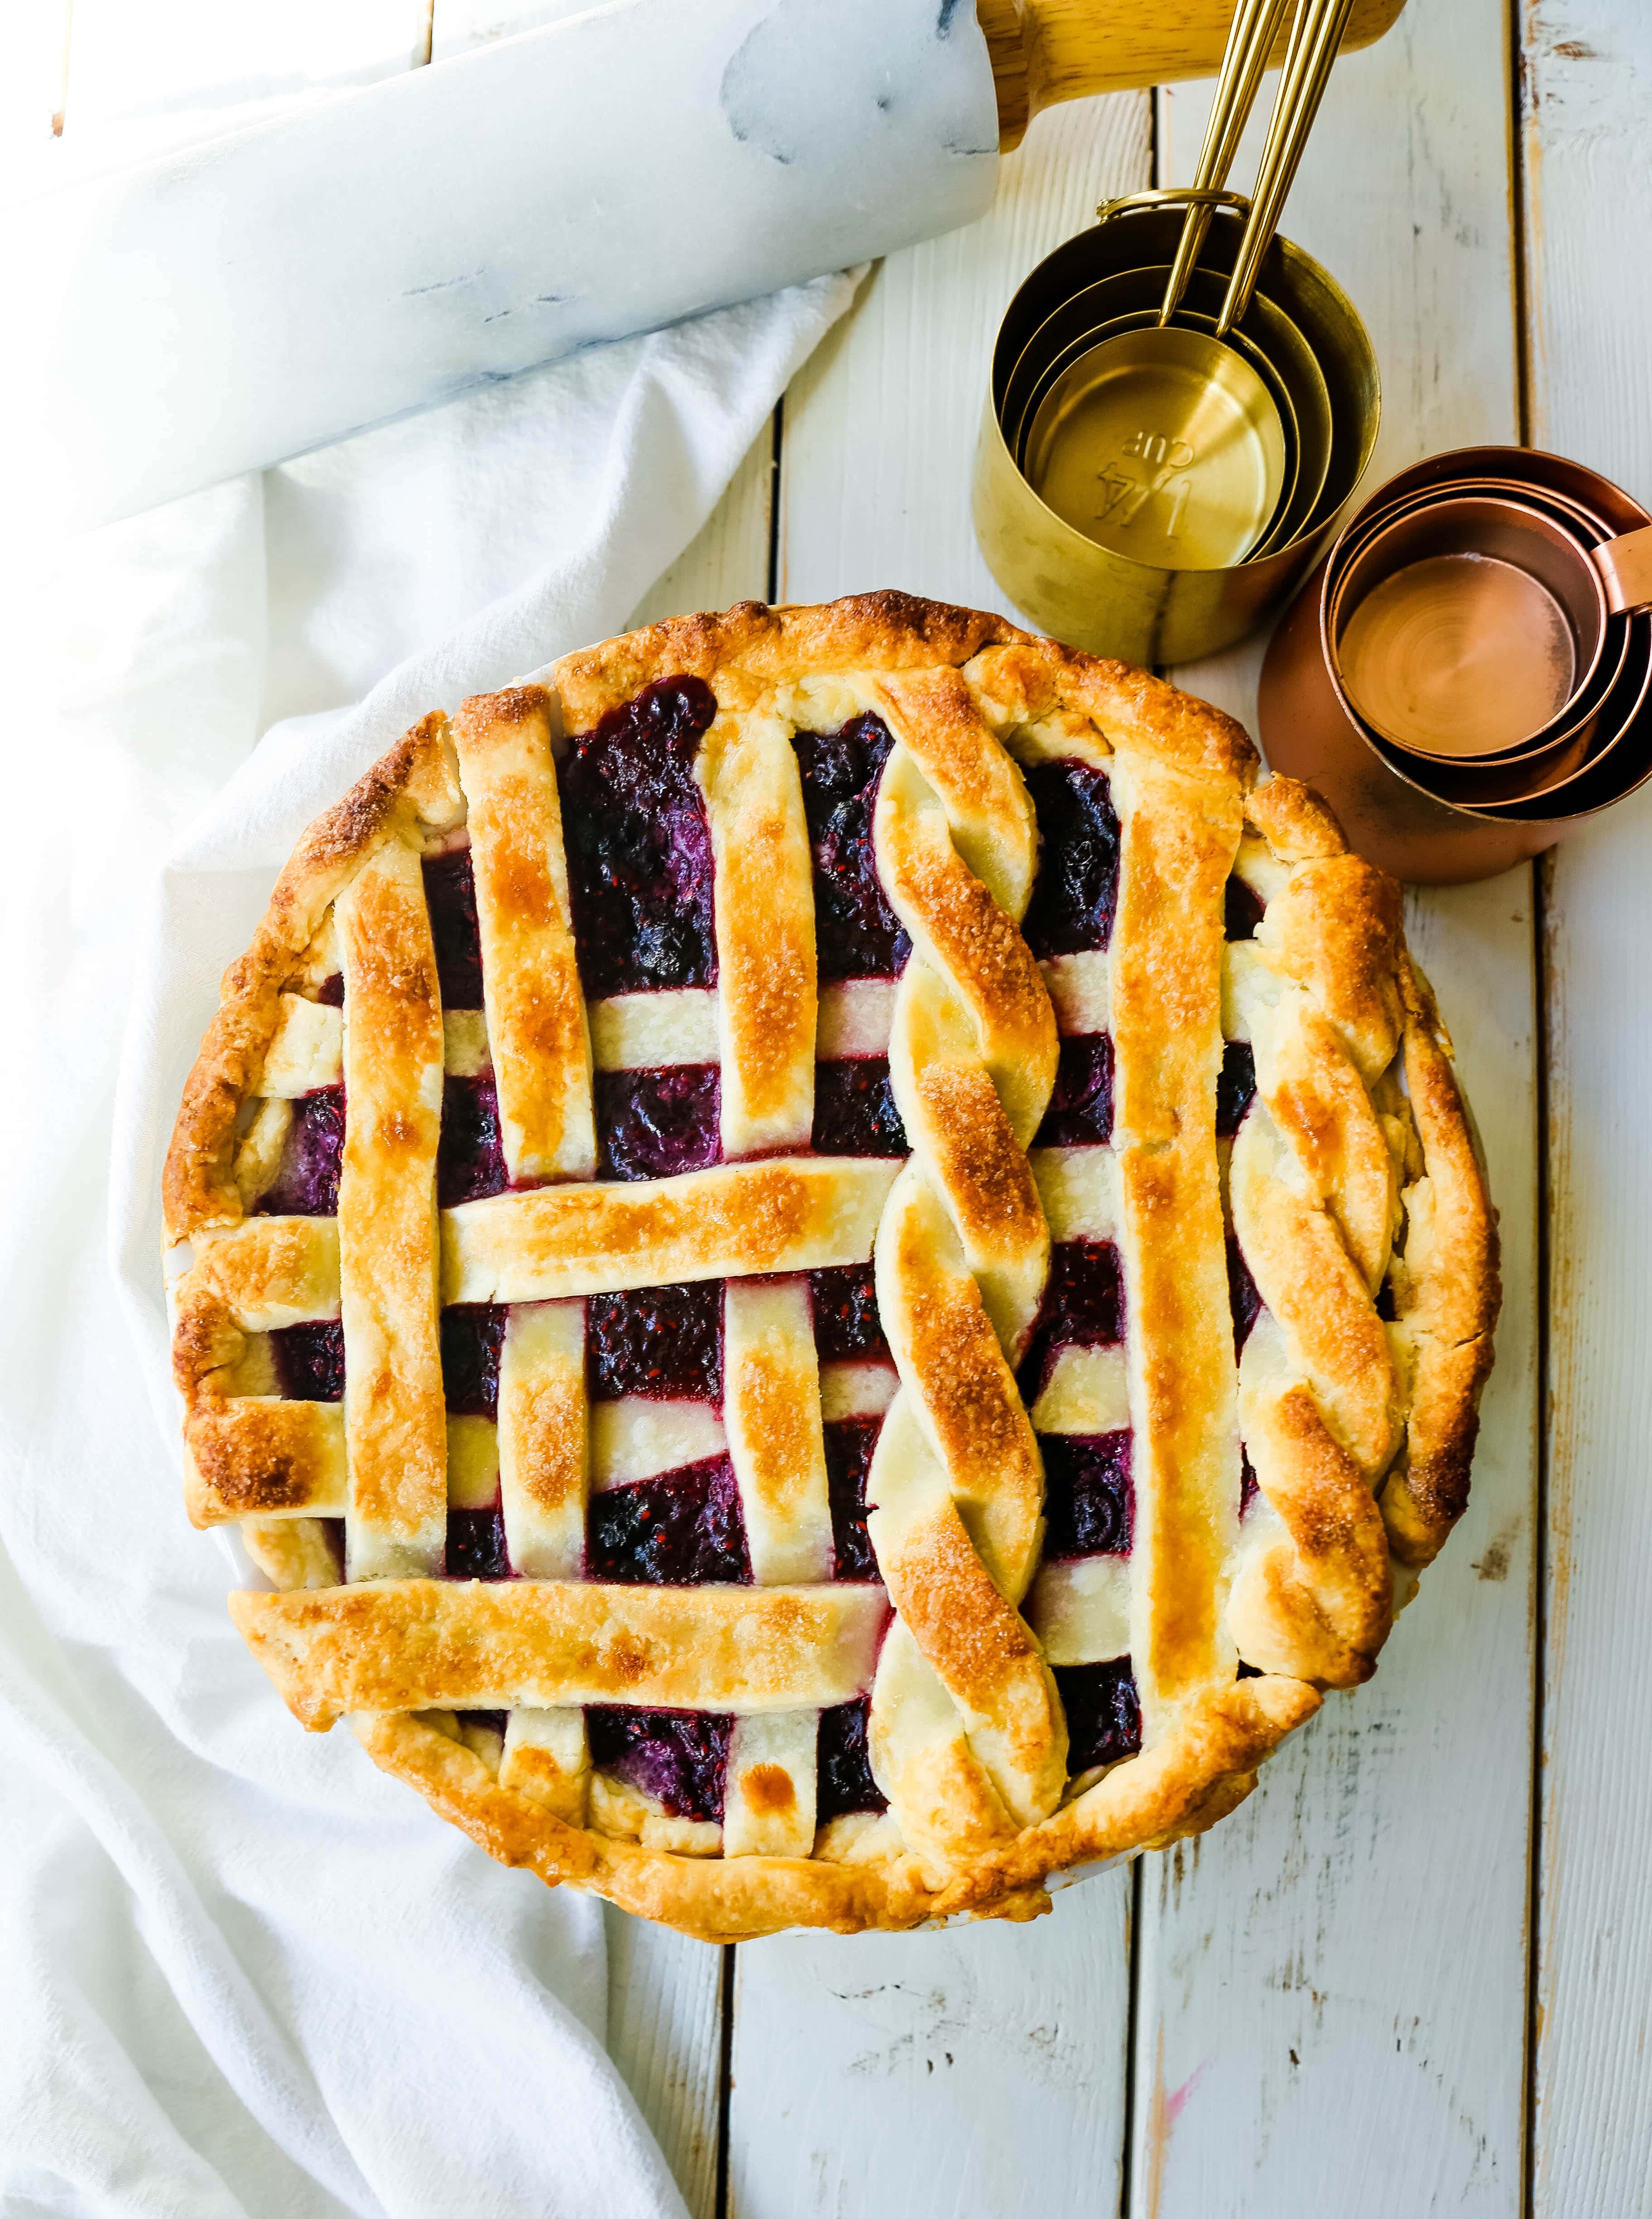 Triple Berry Pie. Das beste hausgemachte Beerenkuchenrezept mit einer buttrigen Kuchenkruste. Toppen Sie es mit Vanilleeis und Sie haben das perfekte Beeren-Dessert! Das beste Beerenkuchen-Rezept. www.modernhoney.com #berrypie #pie #berries #tripleberrypie #thanksgiving